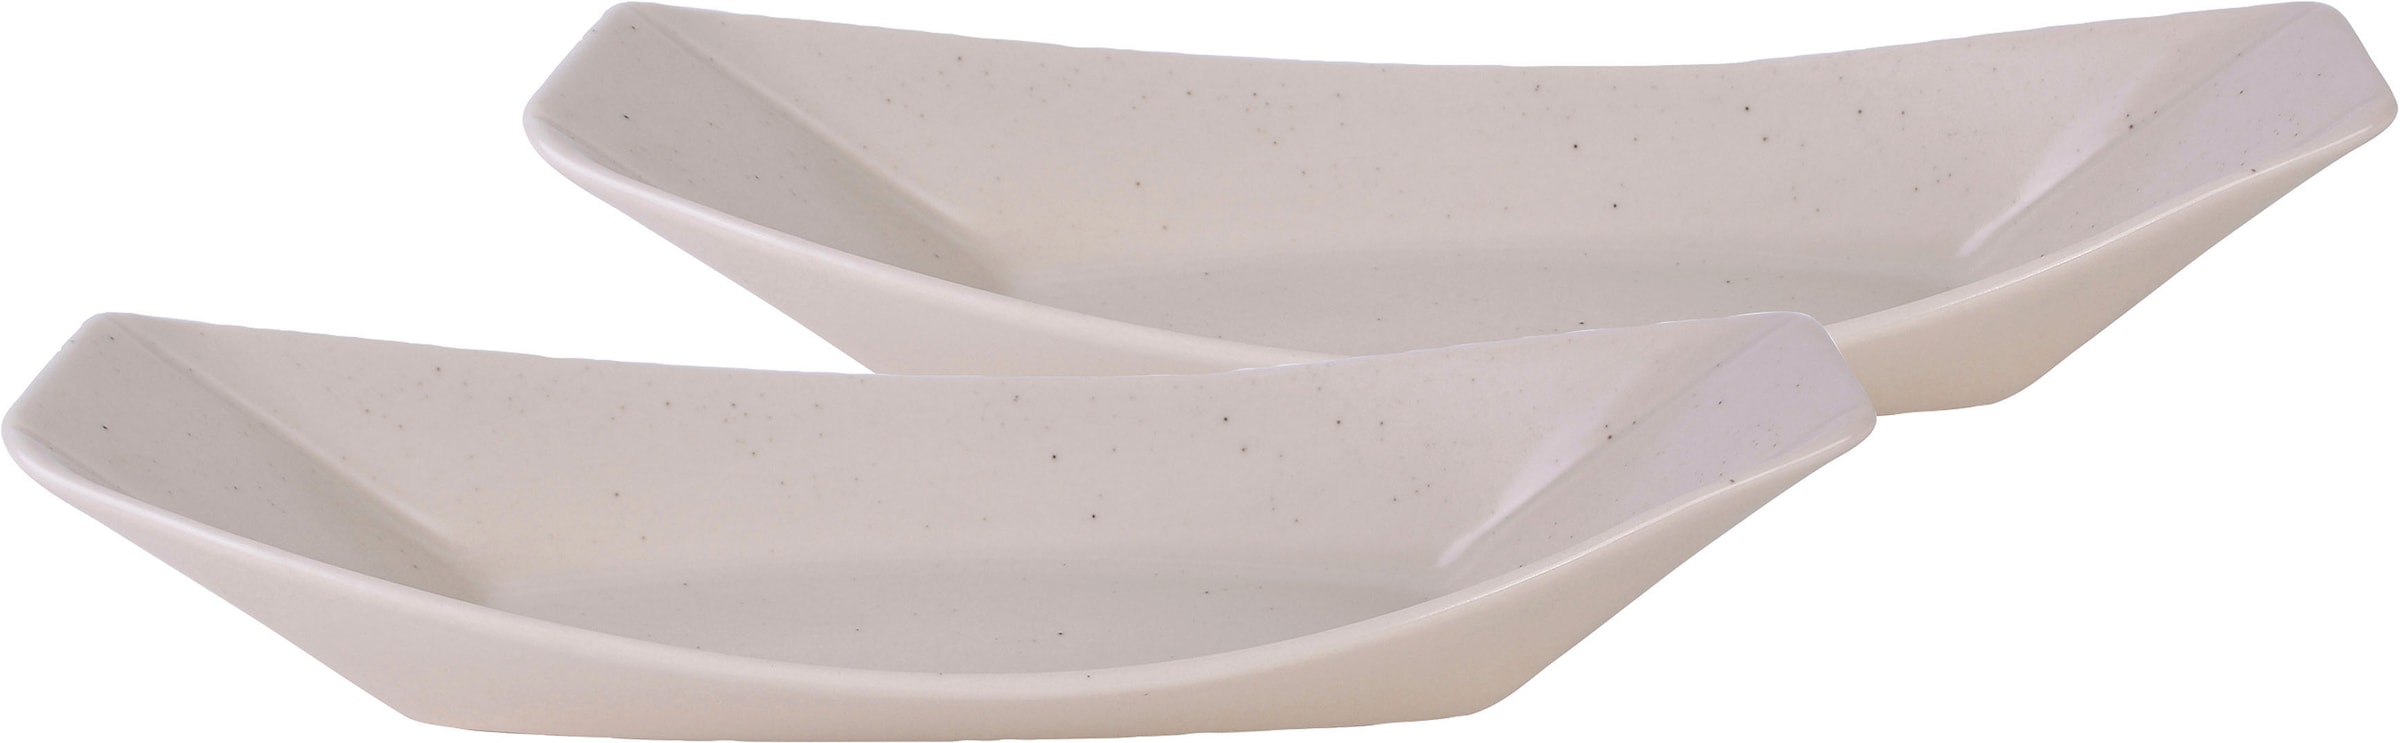 GILDE Schale »Boat«, Alumimium, 1 zum Struktur, ideal tlg., silberfarbene OTTO bei Antik-Finish, Dekorieren aus